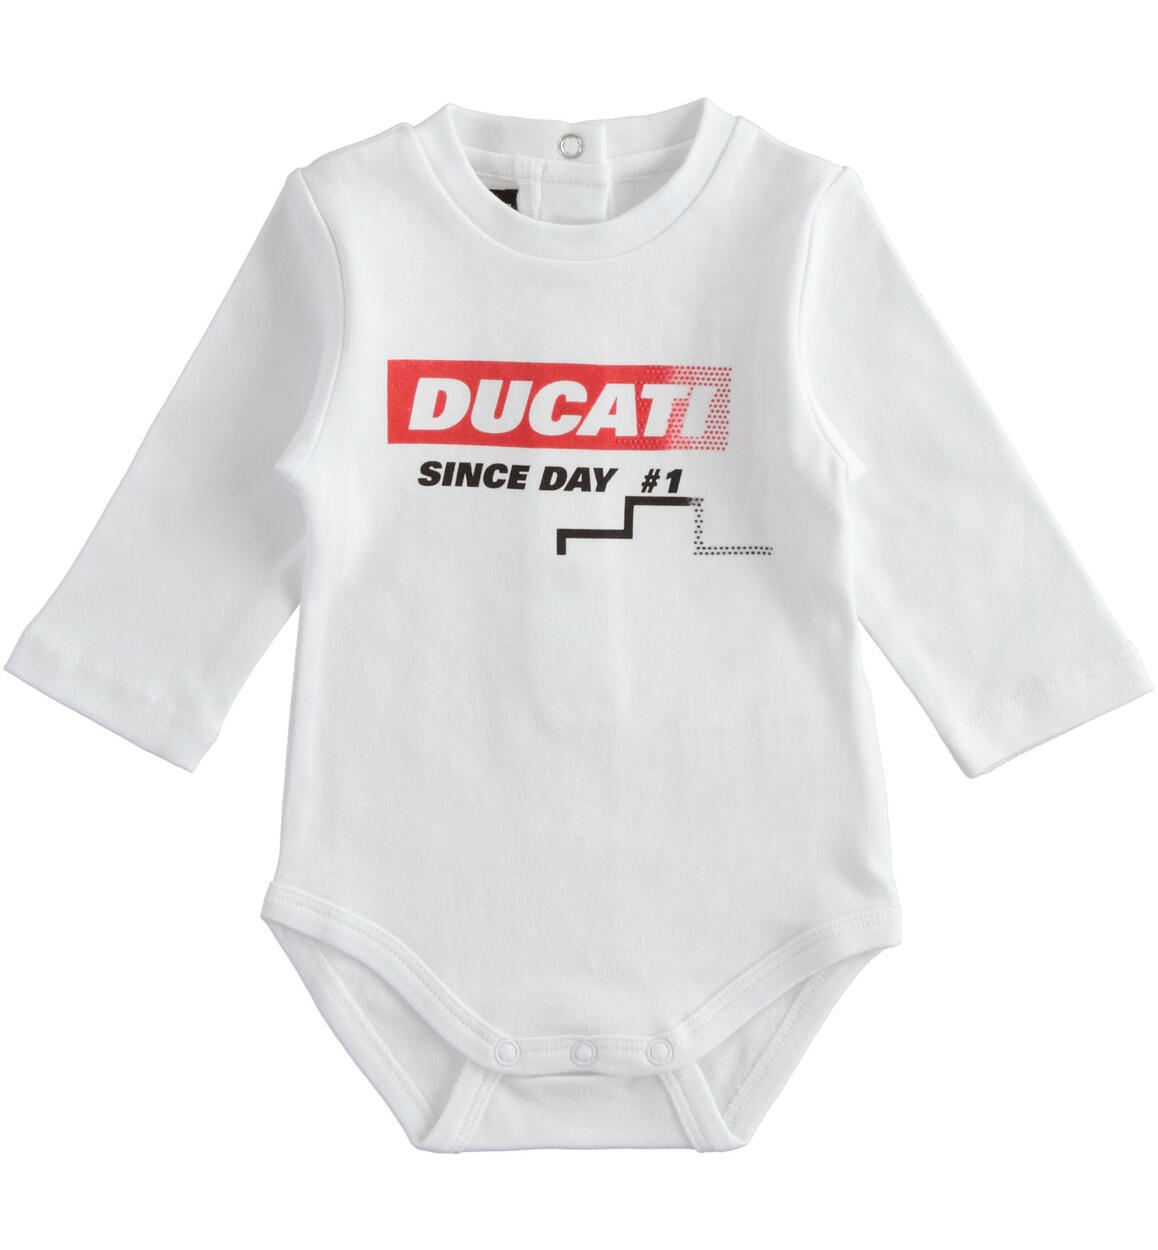 Body neonato manica lunga Ducati BIANCO DUCATI